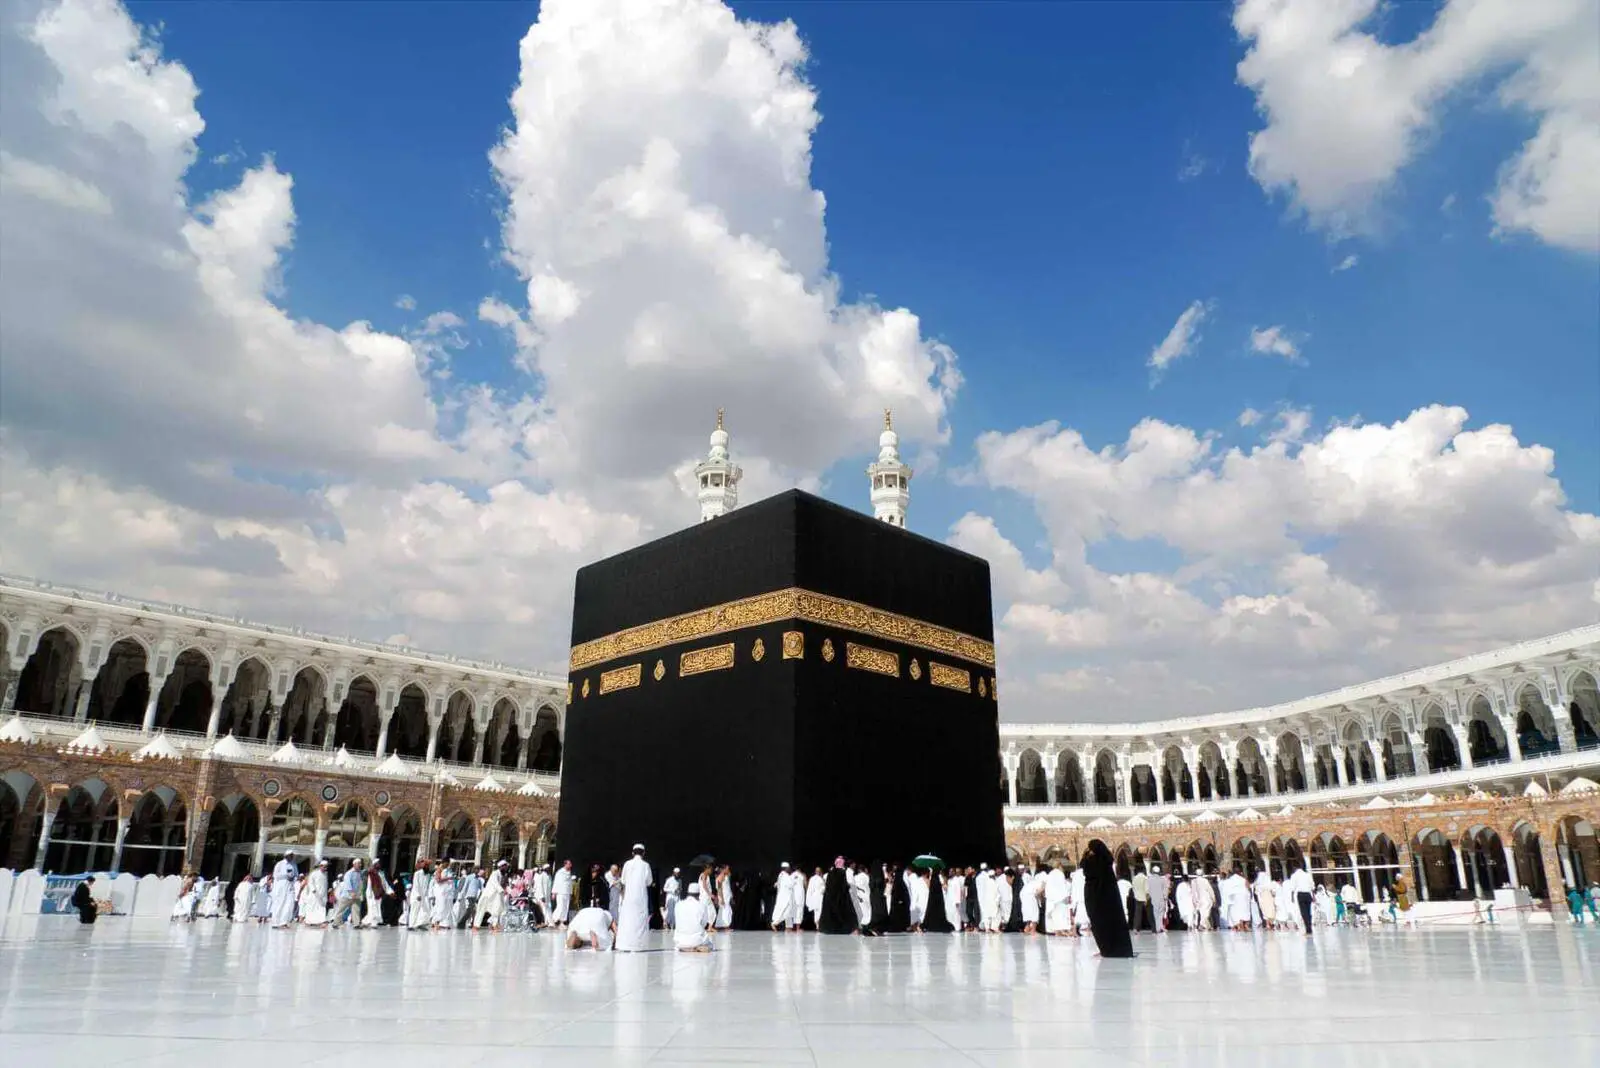 Fortolkning af at se Kaabaen i en drøm for en gift mand? - Fortolkning af drømme online